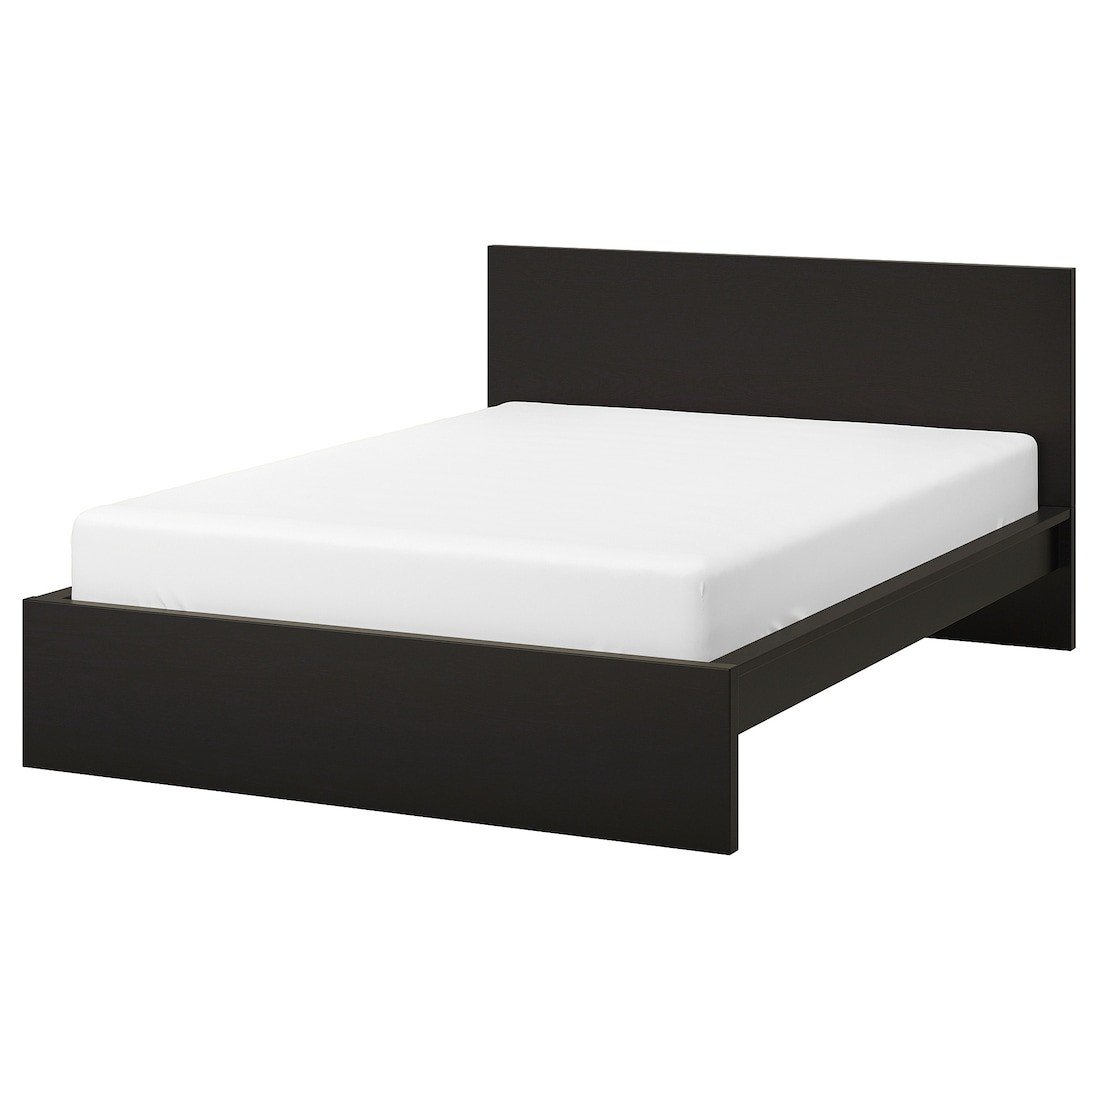 MALM МАЛЬМ Кровать двуспальная, высокий, черно-коричневый / Leirsund, 140x200 см